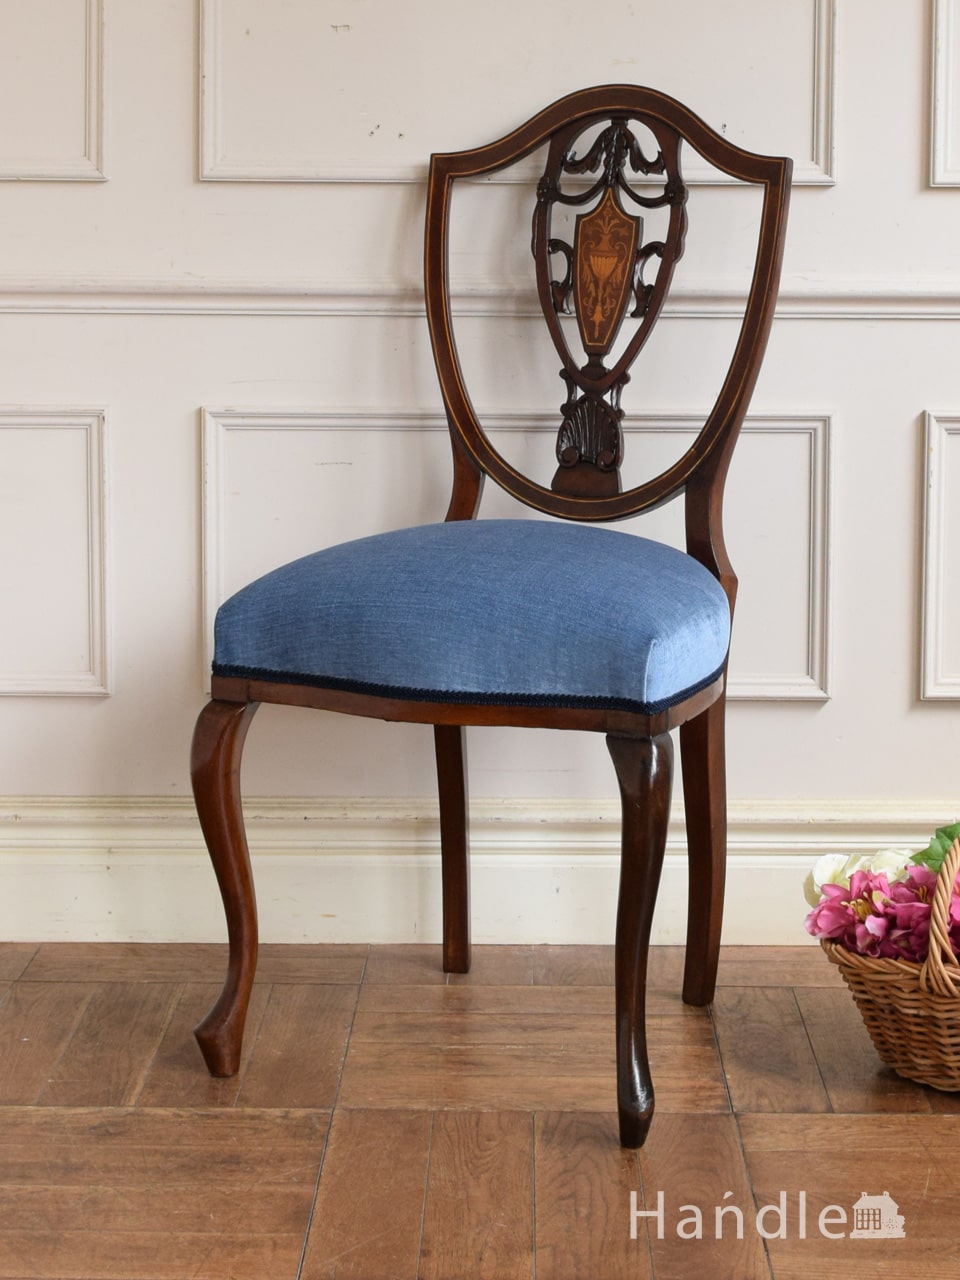 ヘップルホワイトがデザインしたアンティークの椅子、象嵌細工が入った背もたれのヘップルホワイトチェア (q-507-c)